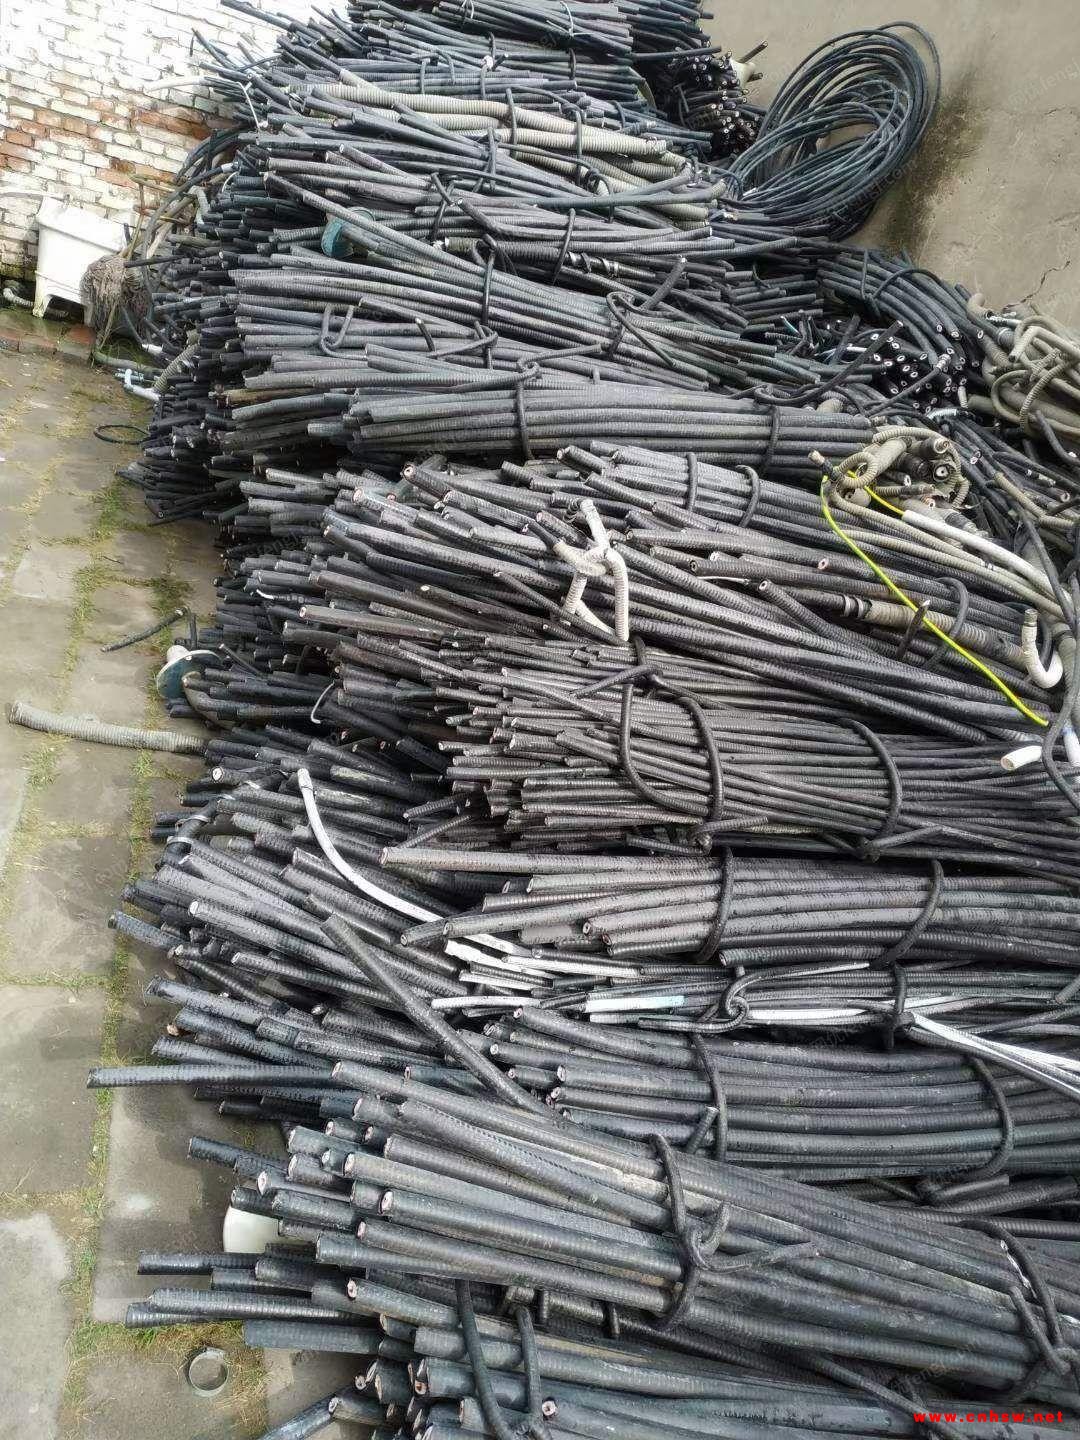 高价回收电线电缆